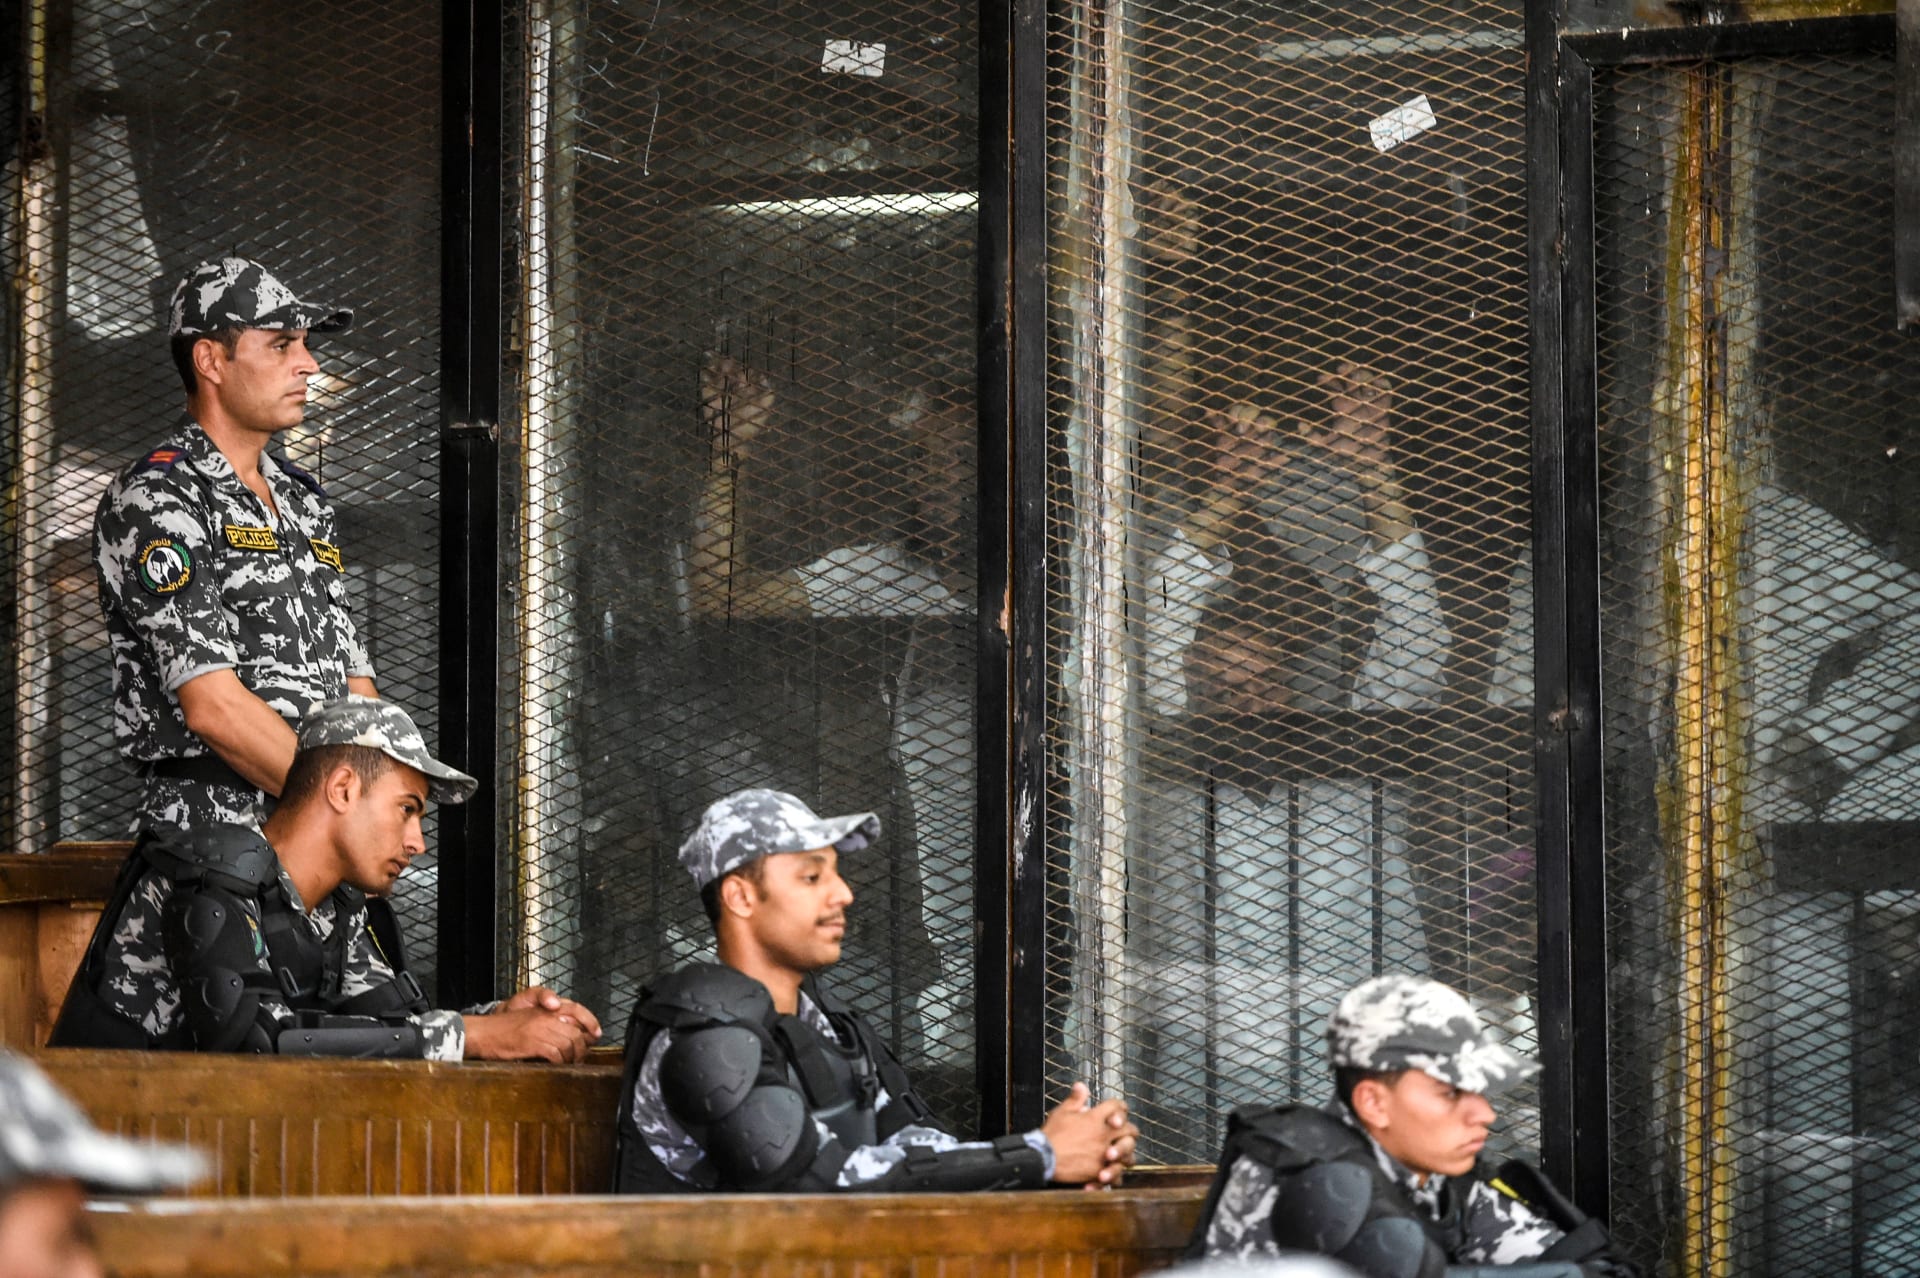 أعضاء من جماعة الإخوان المسلمين المحظورة في مصر يشاهدون داخل رصيف زجاجي أثناء محاكمتهم في العاصمة القاهرة في 28 يوليو 2018